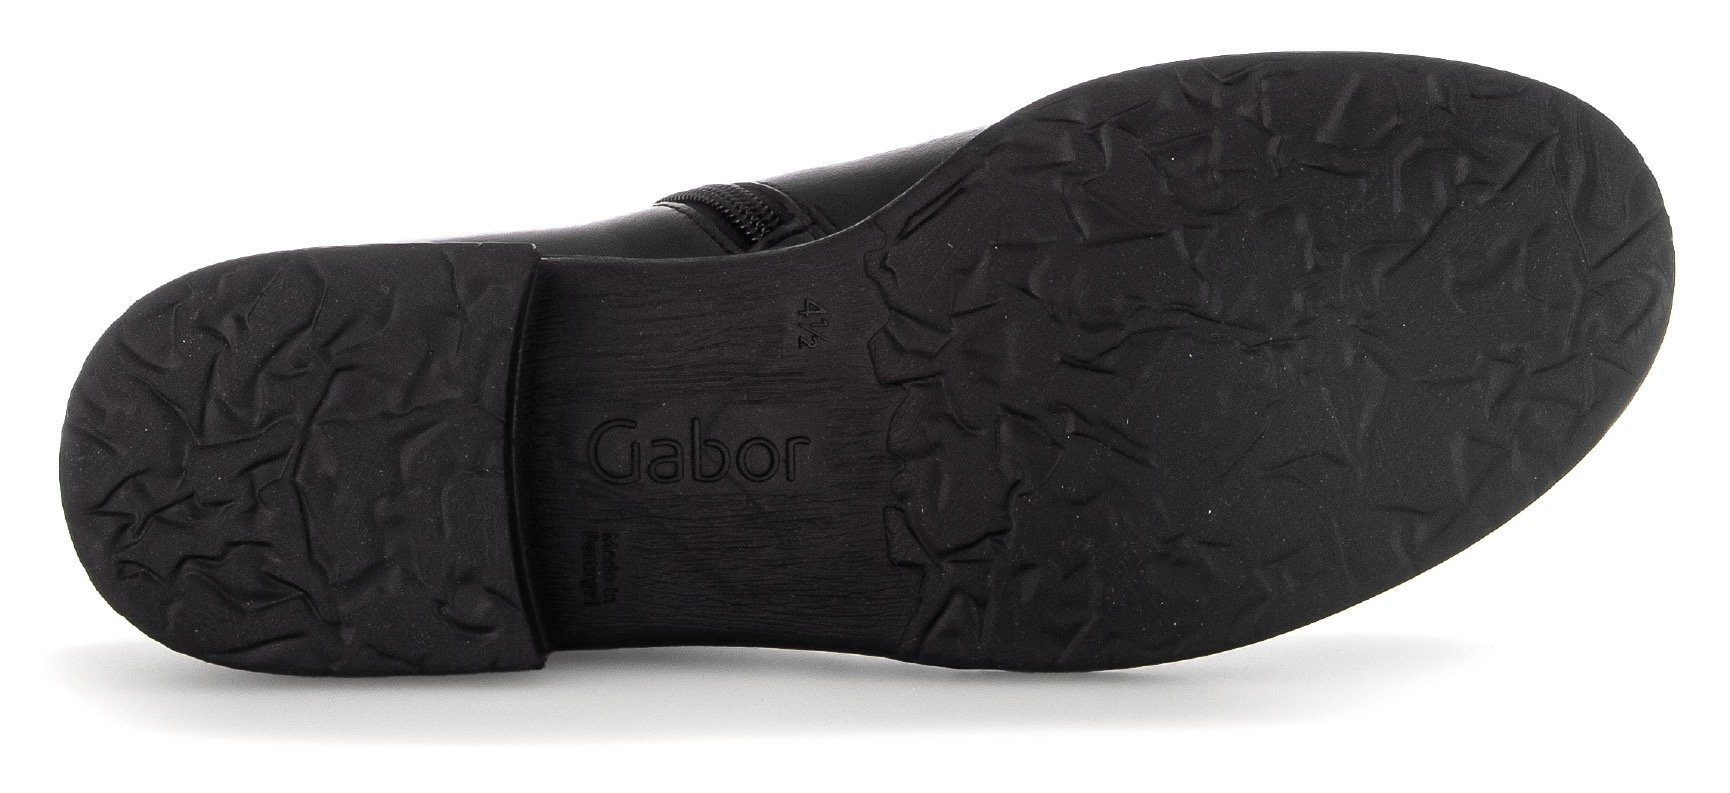 Best mit schwarz Gabor Fitting-Ausstattung Stiefelette